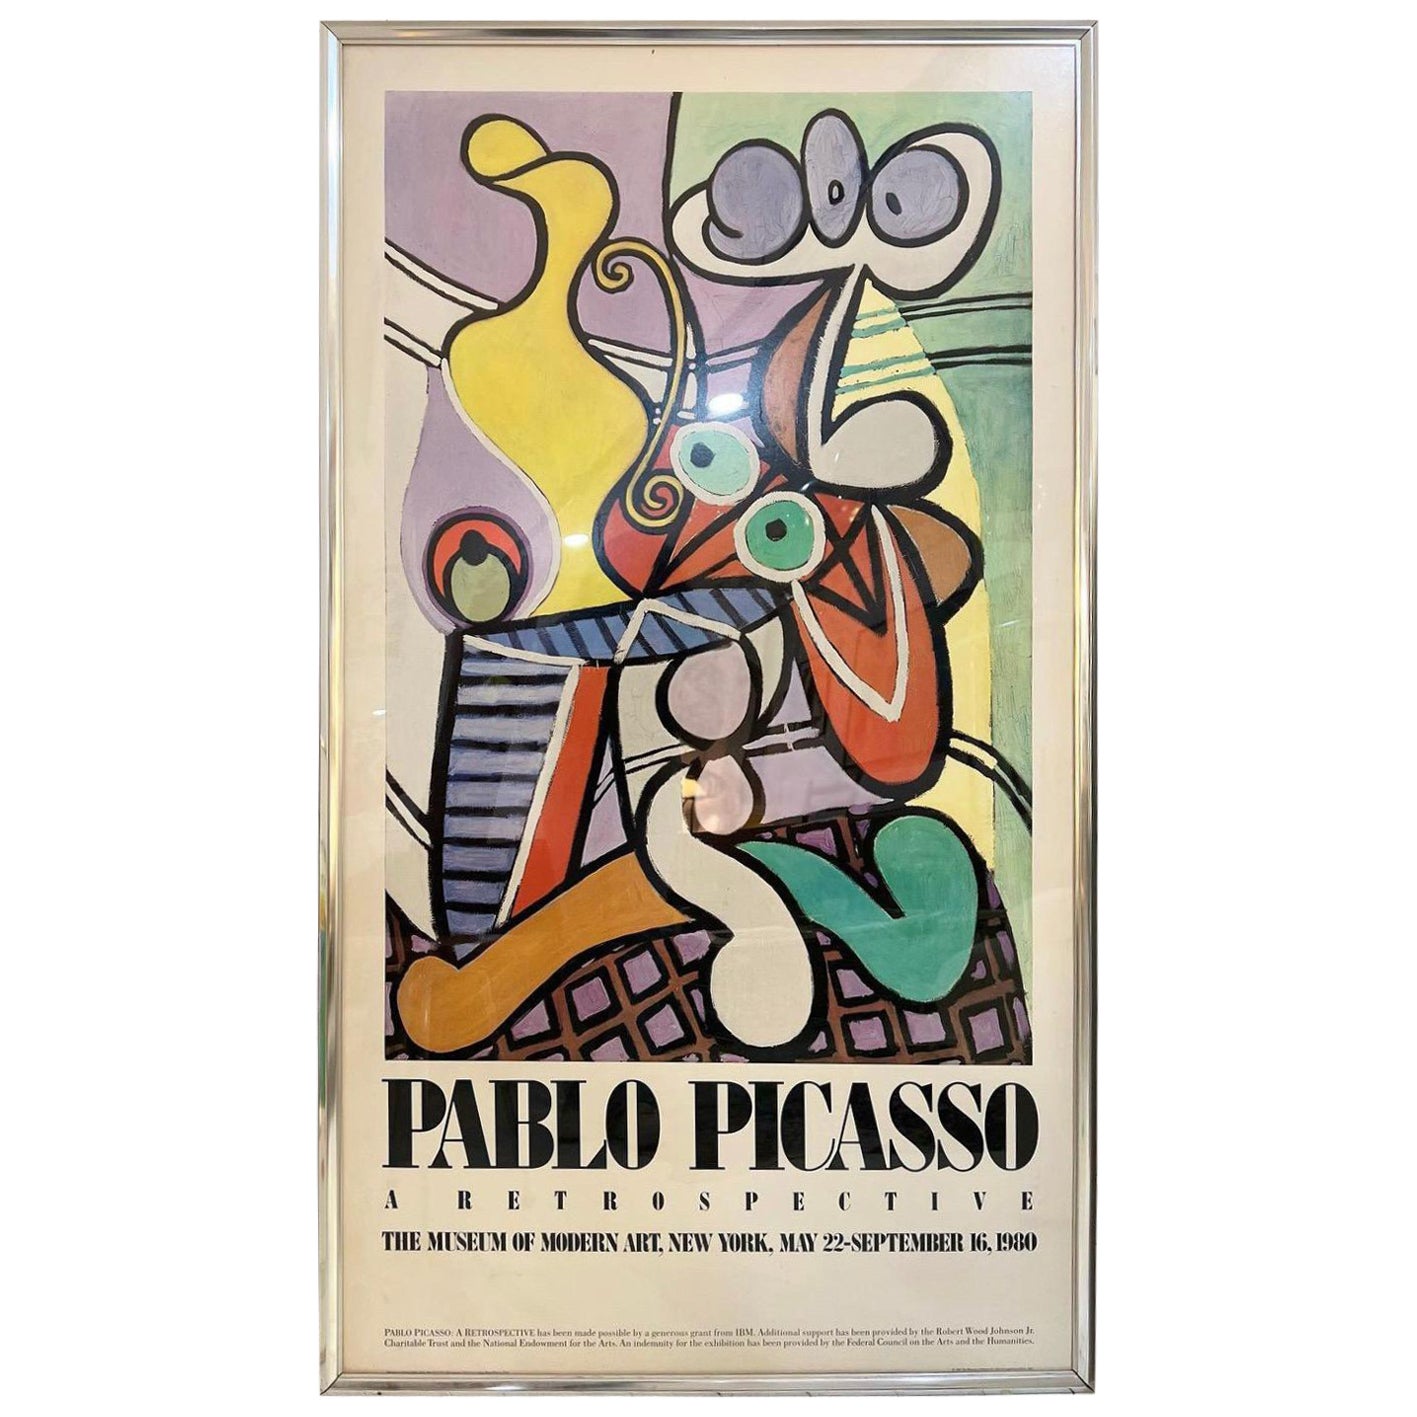 Pablo Picasso Lithograph, 1980s